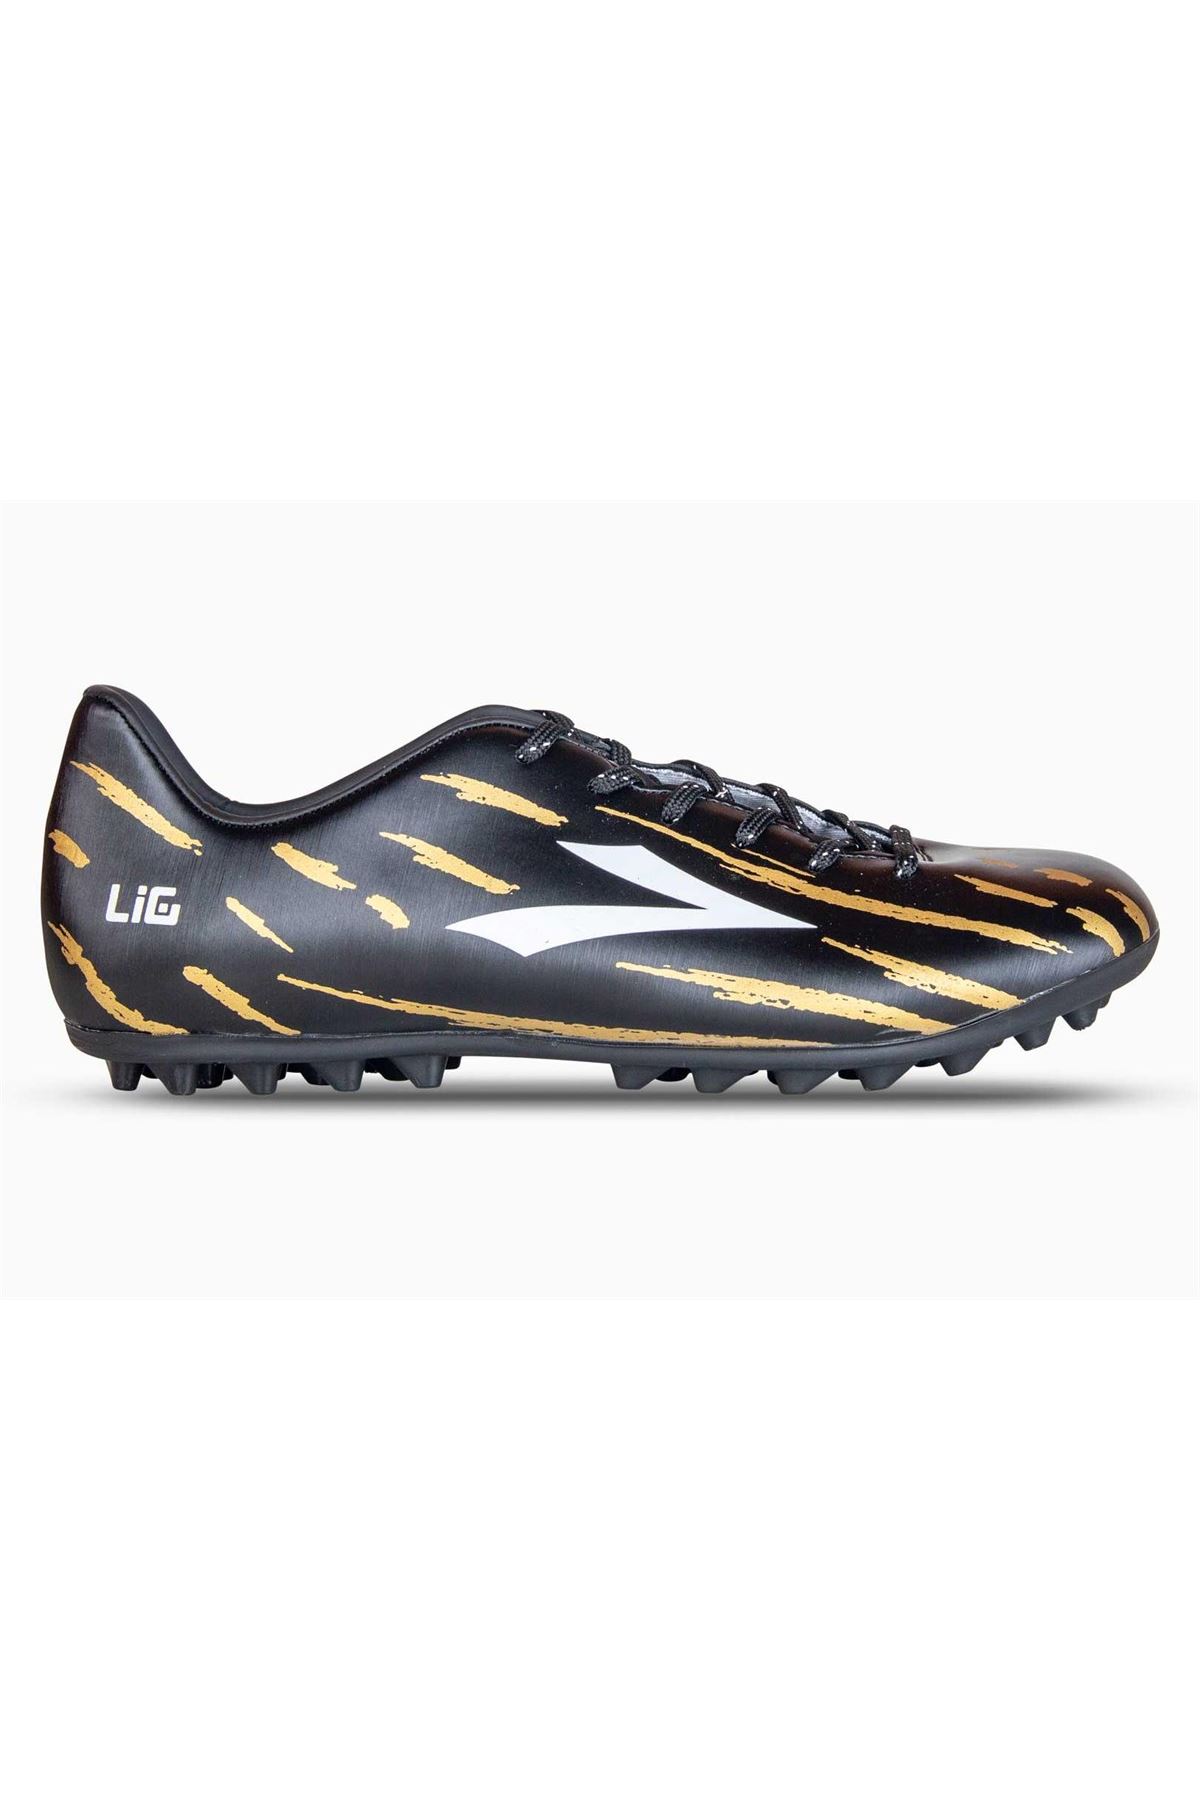 Lig Latmos (31-34) Futbol Ayakkabısı Halı Saha - Siyah